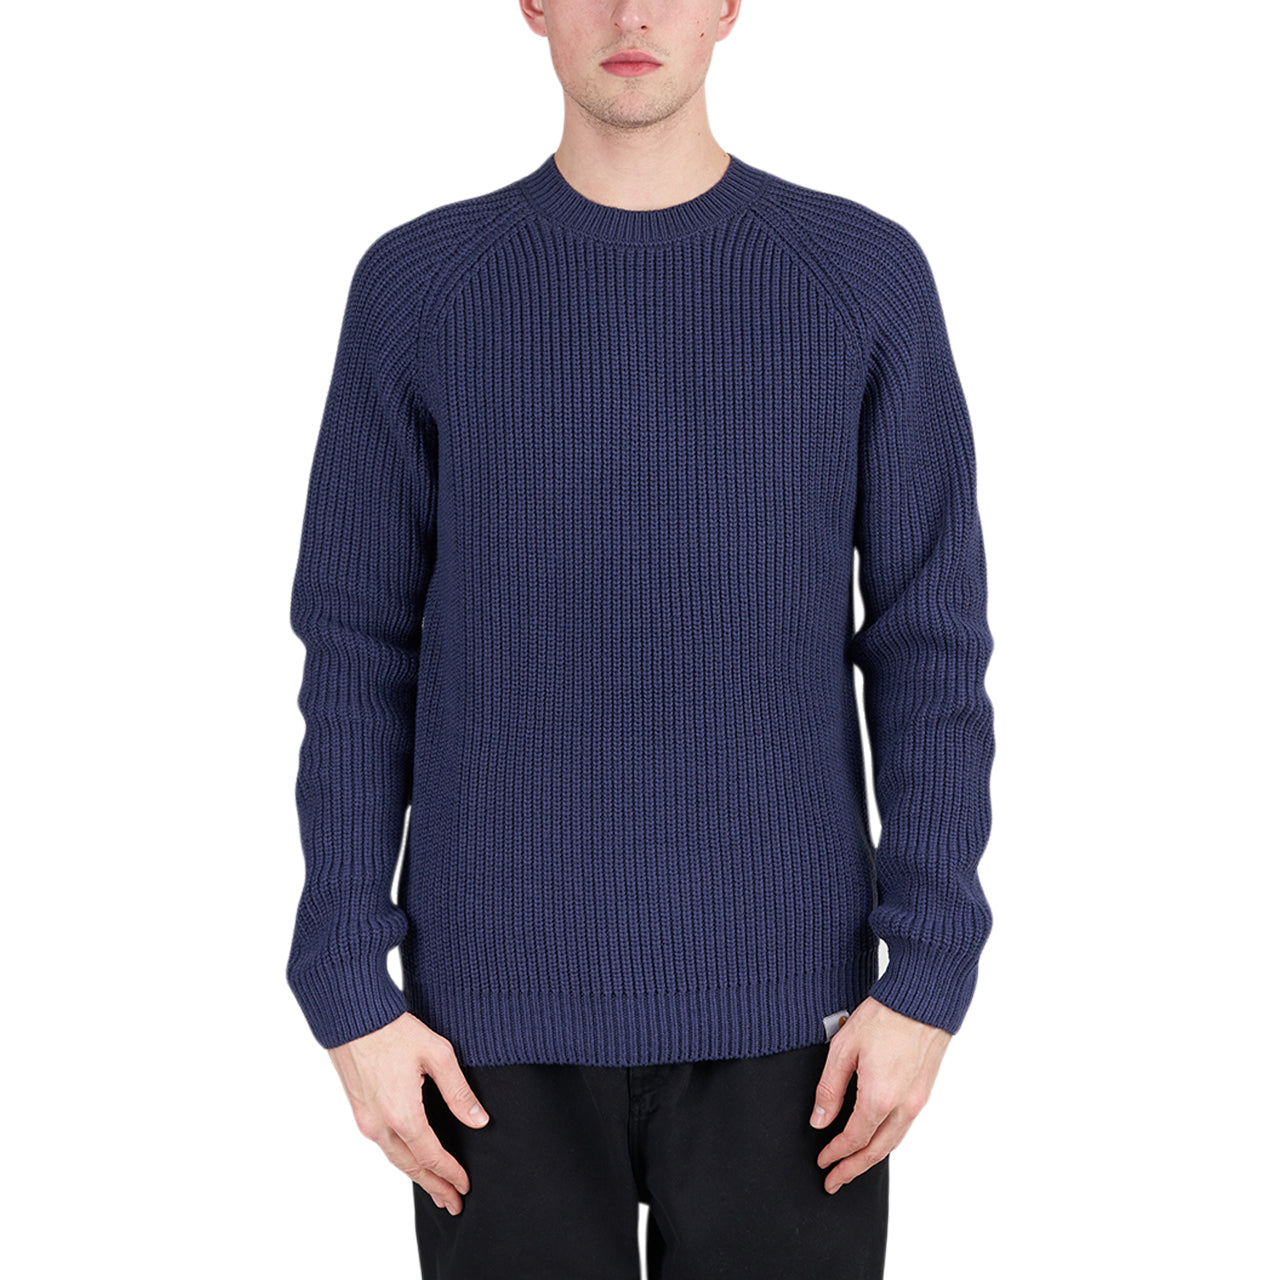 Carhartt WIP Forth Sweater (Blau)  - Allike Store